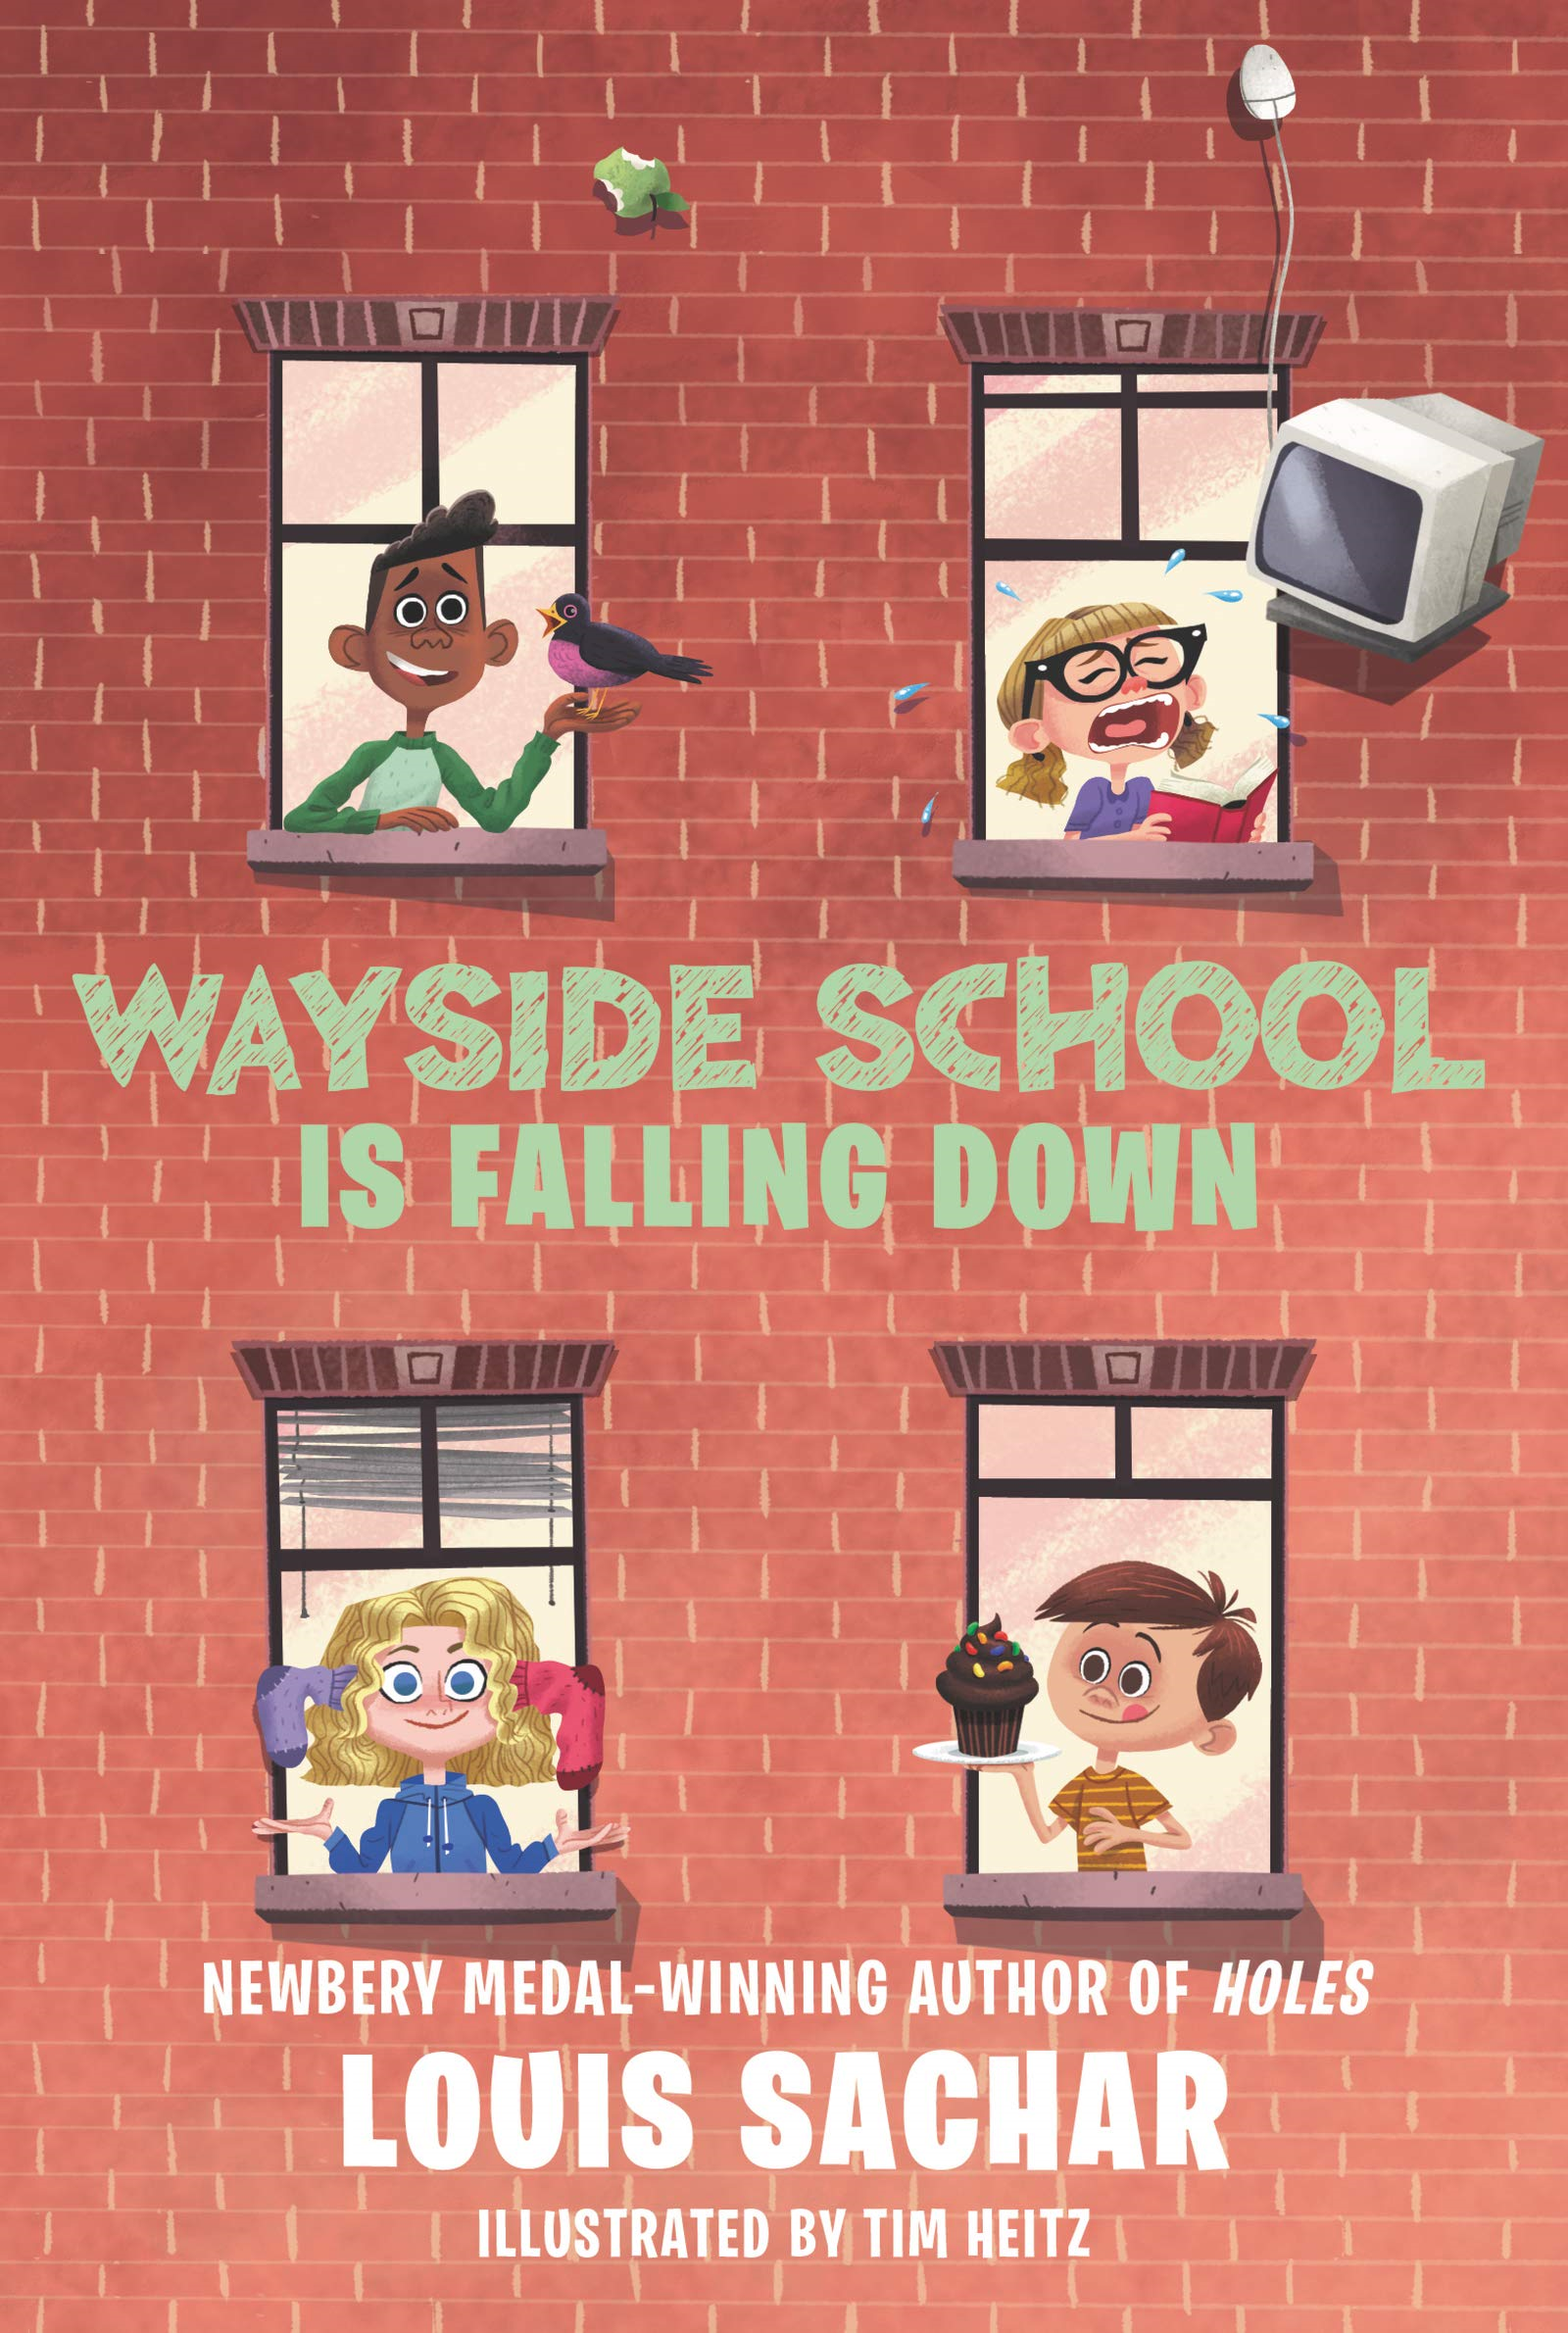 Wayside School is Falling Down - Activities  Wayside school, Feelings  activities, Novel study activities